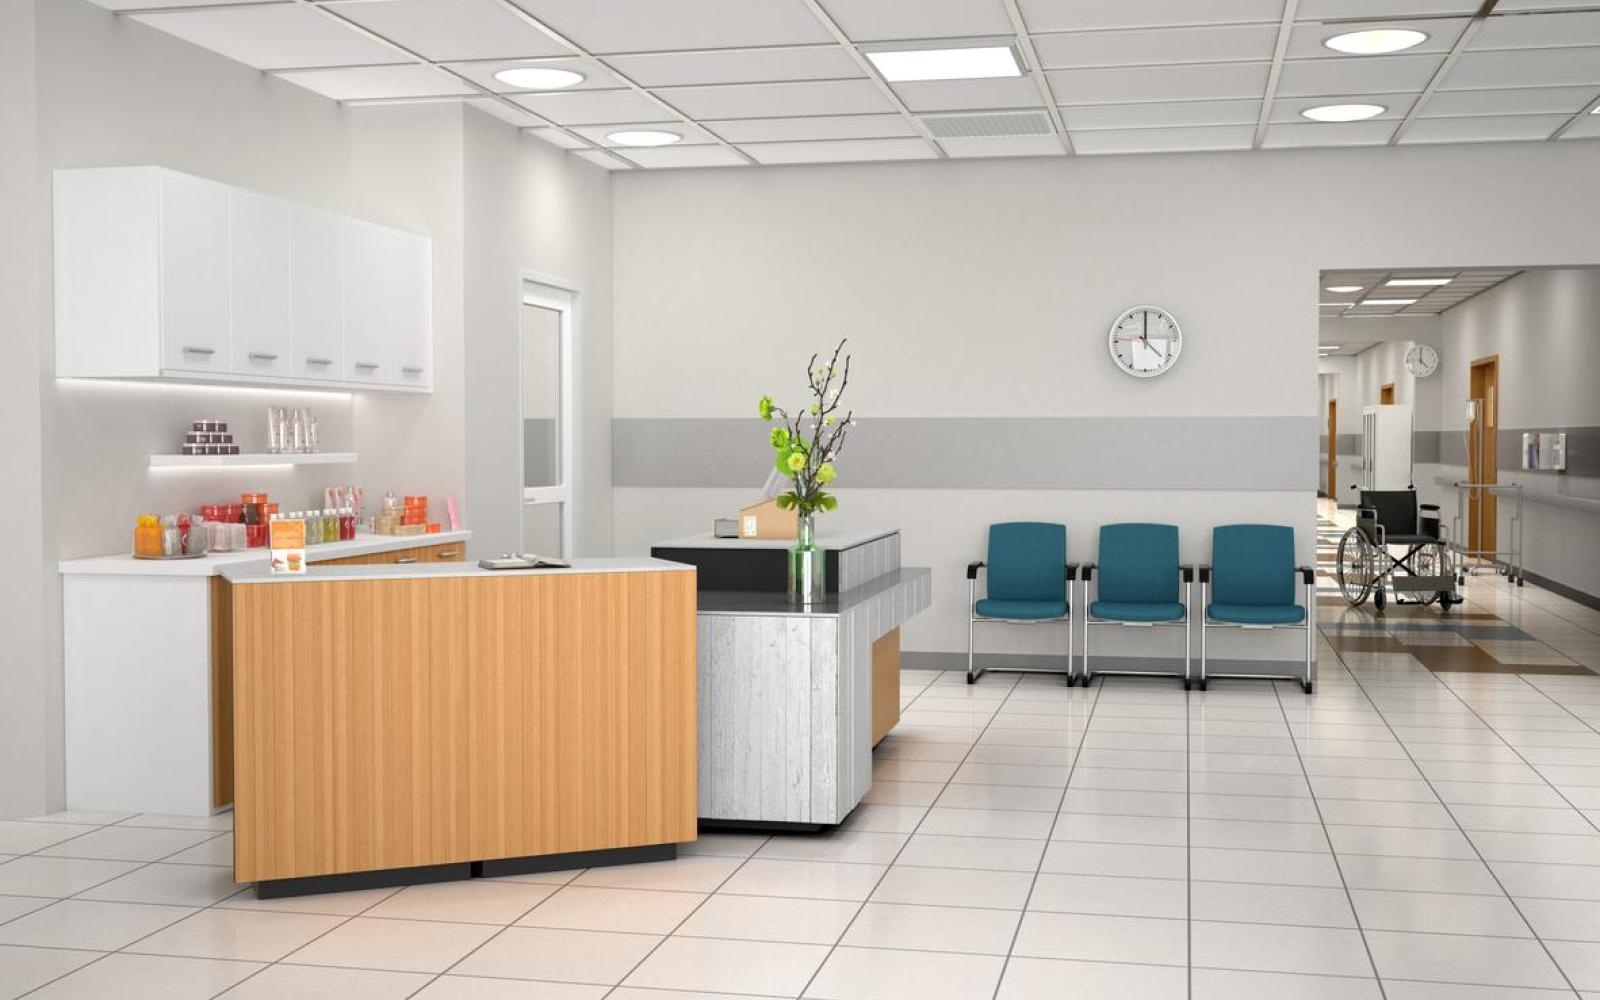 Health care facility, interior